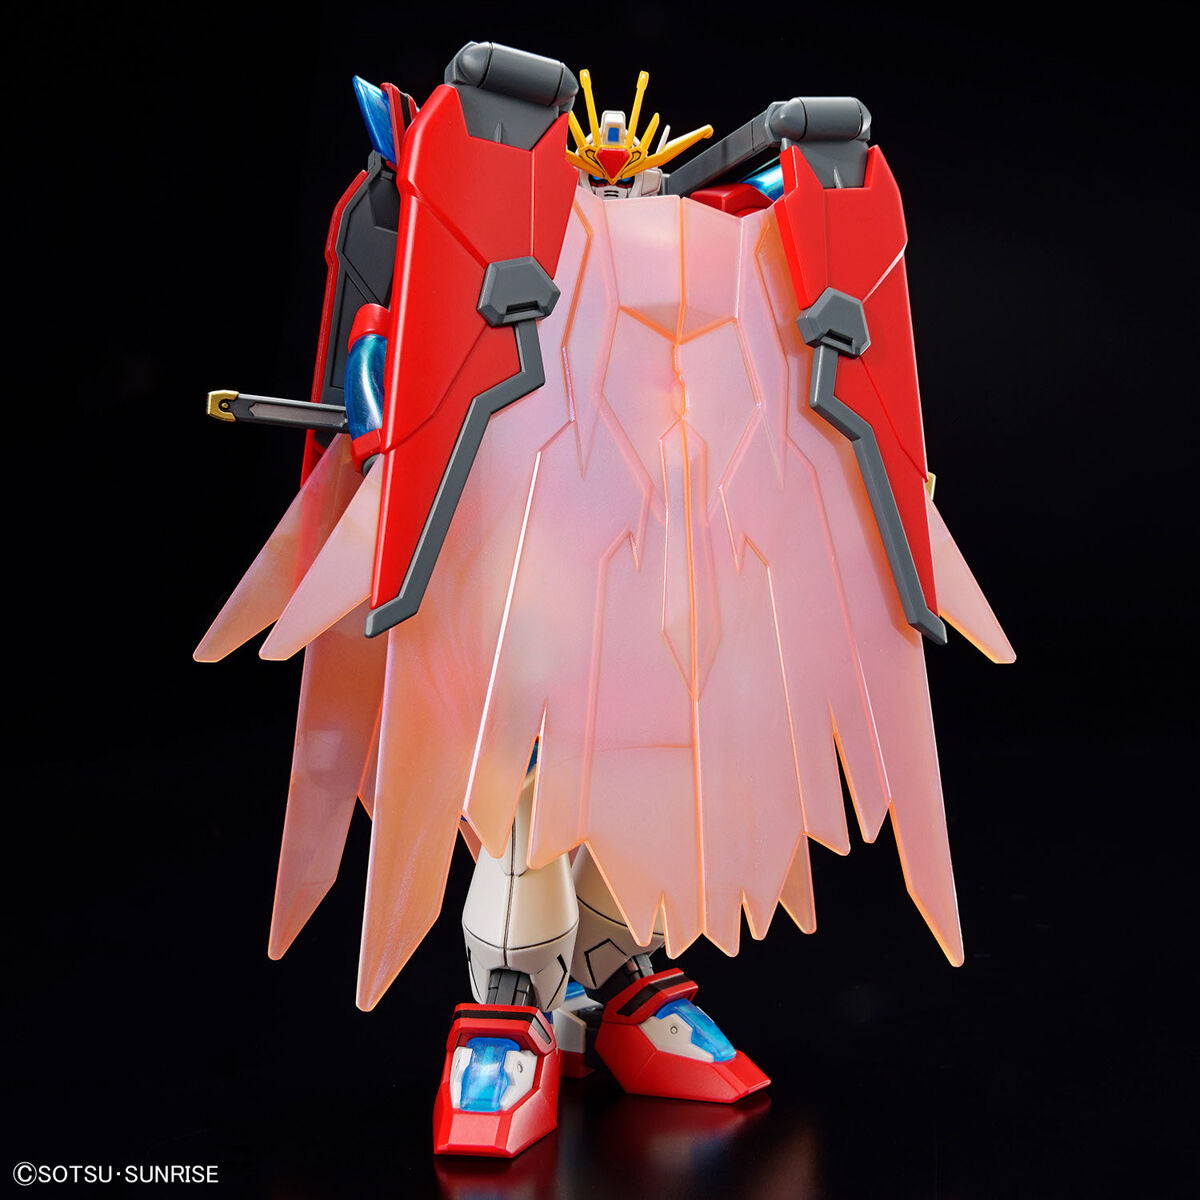 HG 1/144 Shin Burning Gundam